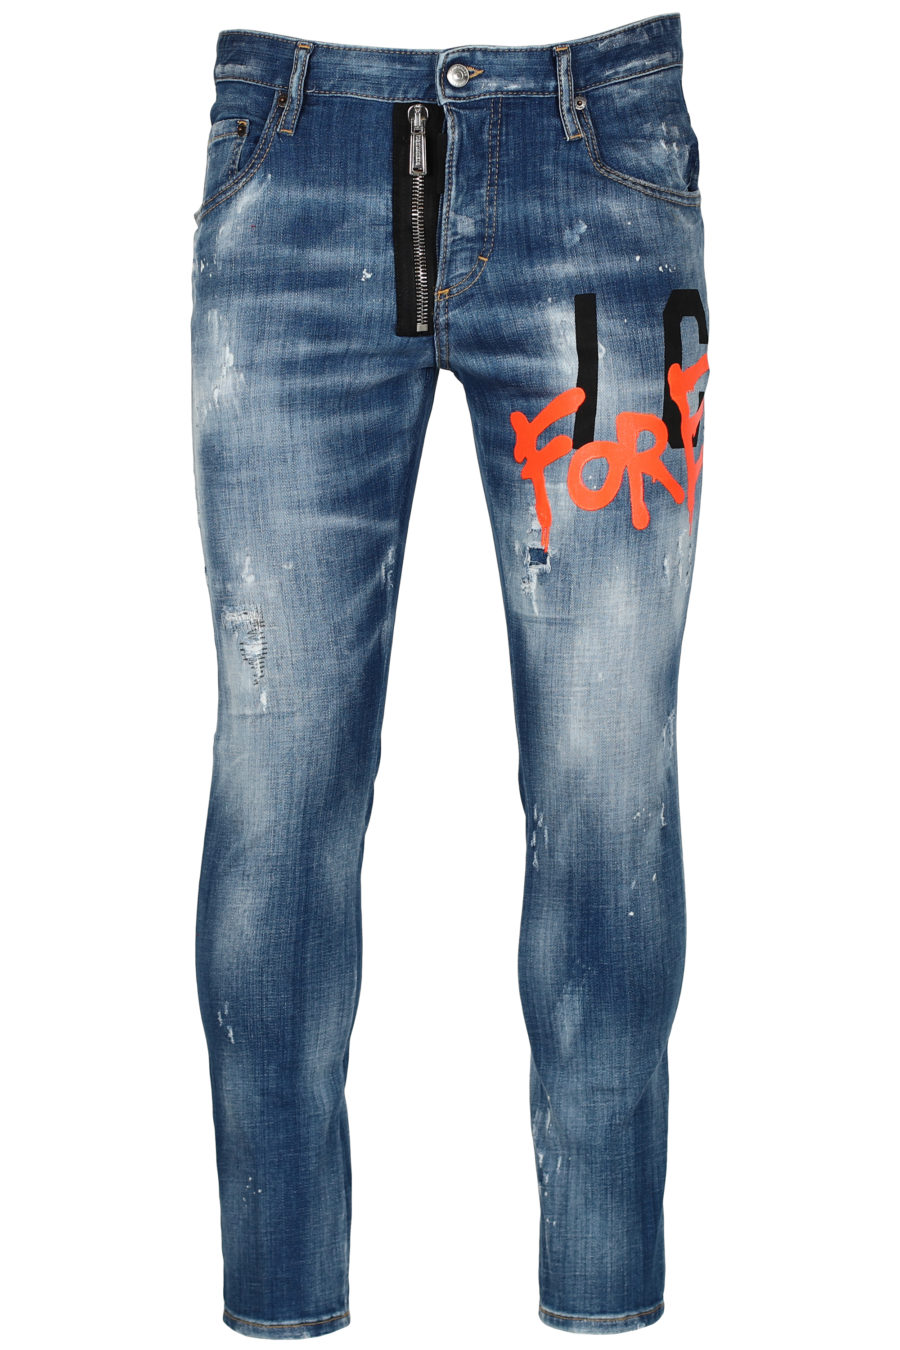 Jeans "Skater Icon forever" - IMG 2653